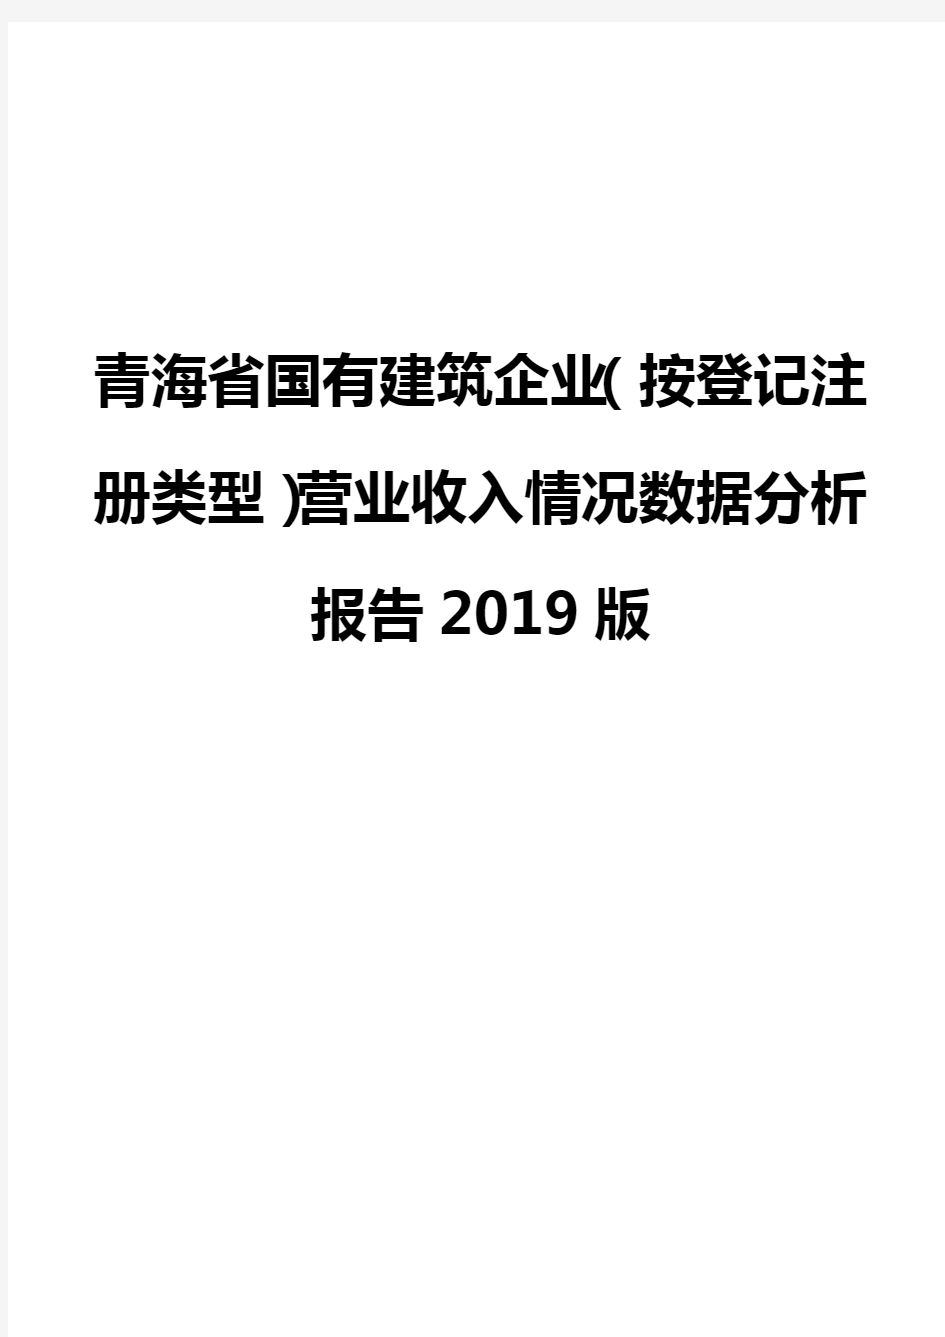 青海省国有建筑企业(按登记注册类型)营业收入情况数据分析报告2019版